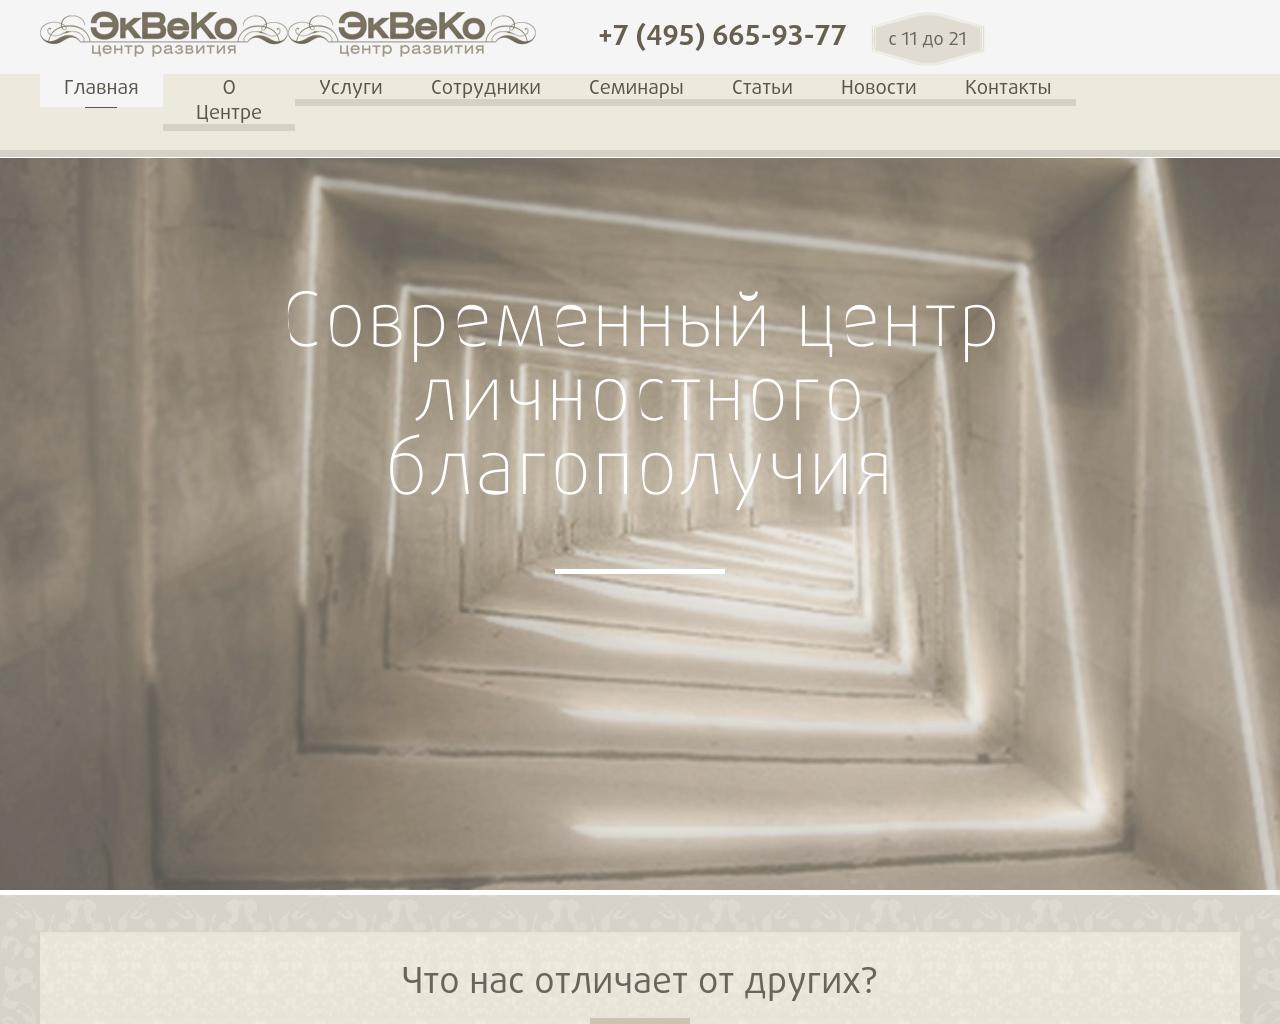 Изображение сайта ekveco.ru в разрешении 1280x1024